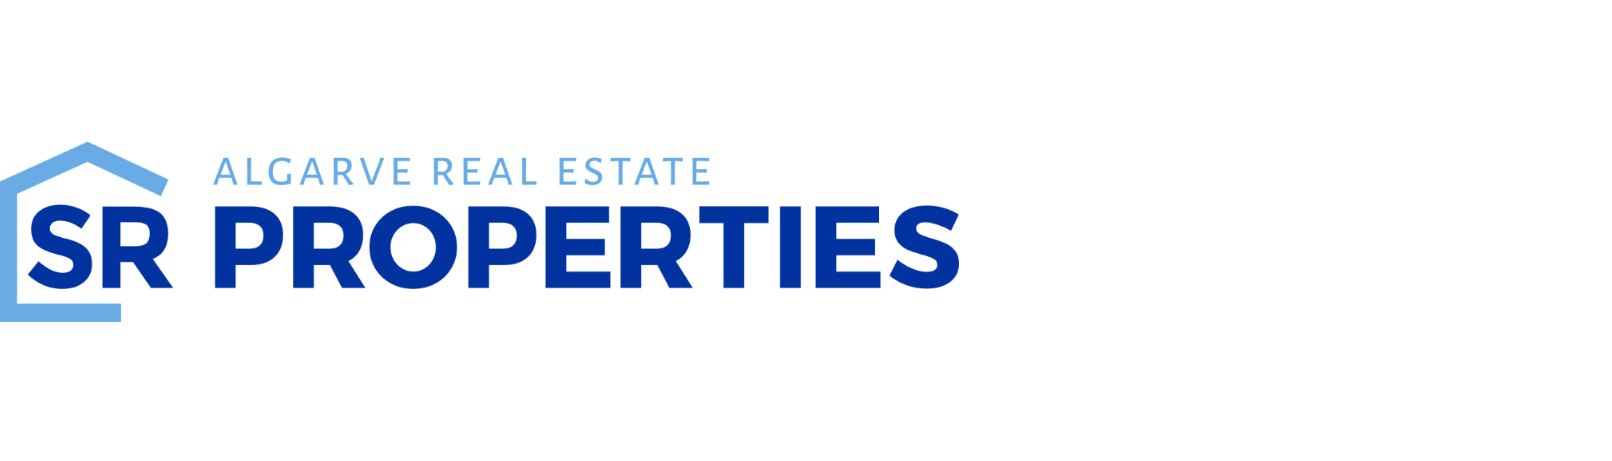 SR Properties Algarve - Agent Contact